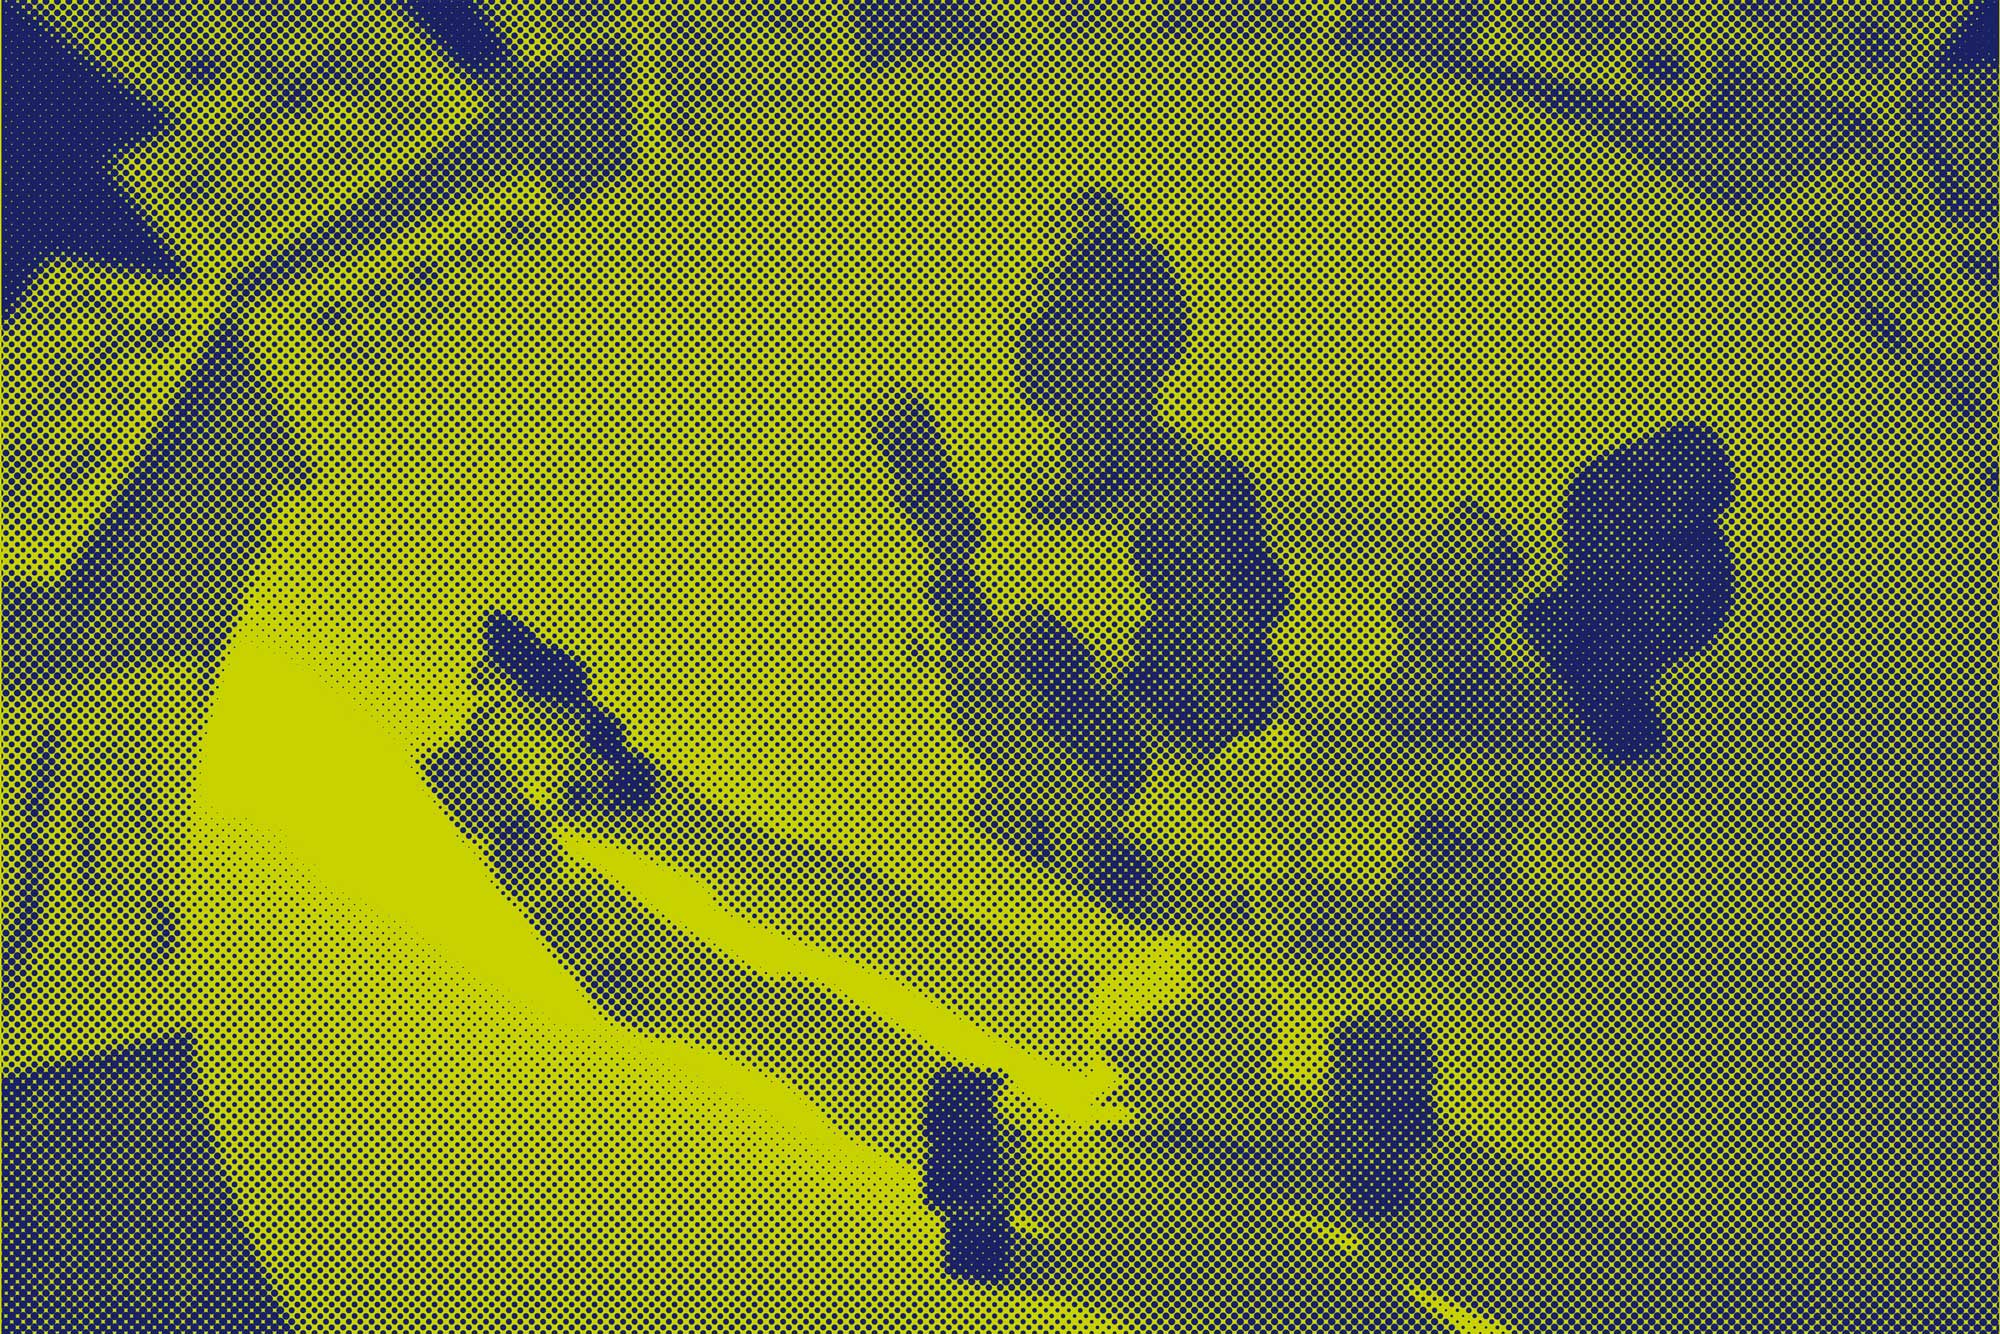 Blau, Gelb gerastertes Bild von Spielfiguren auf einem Tisch